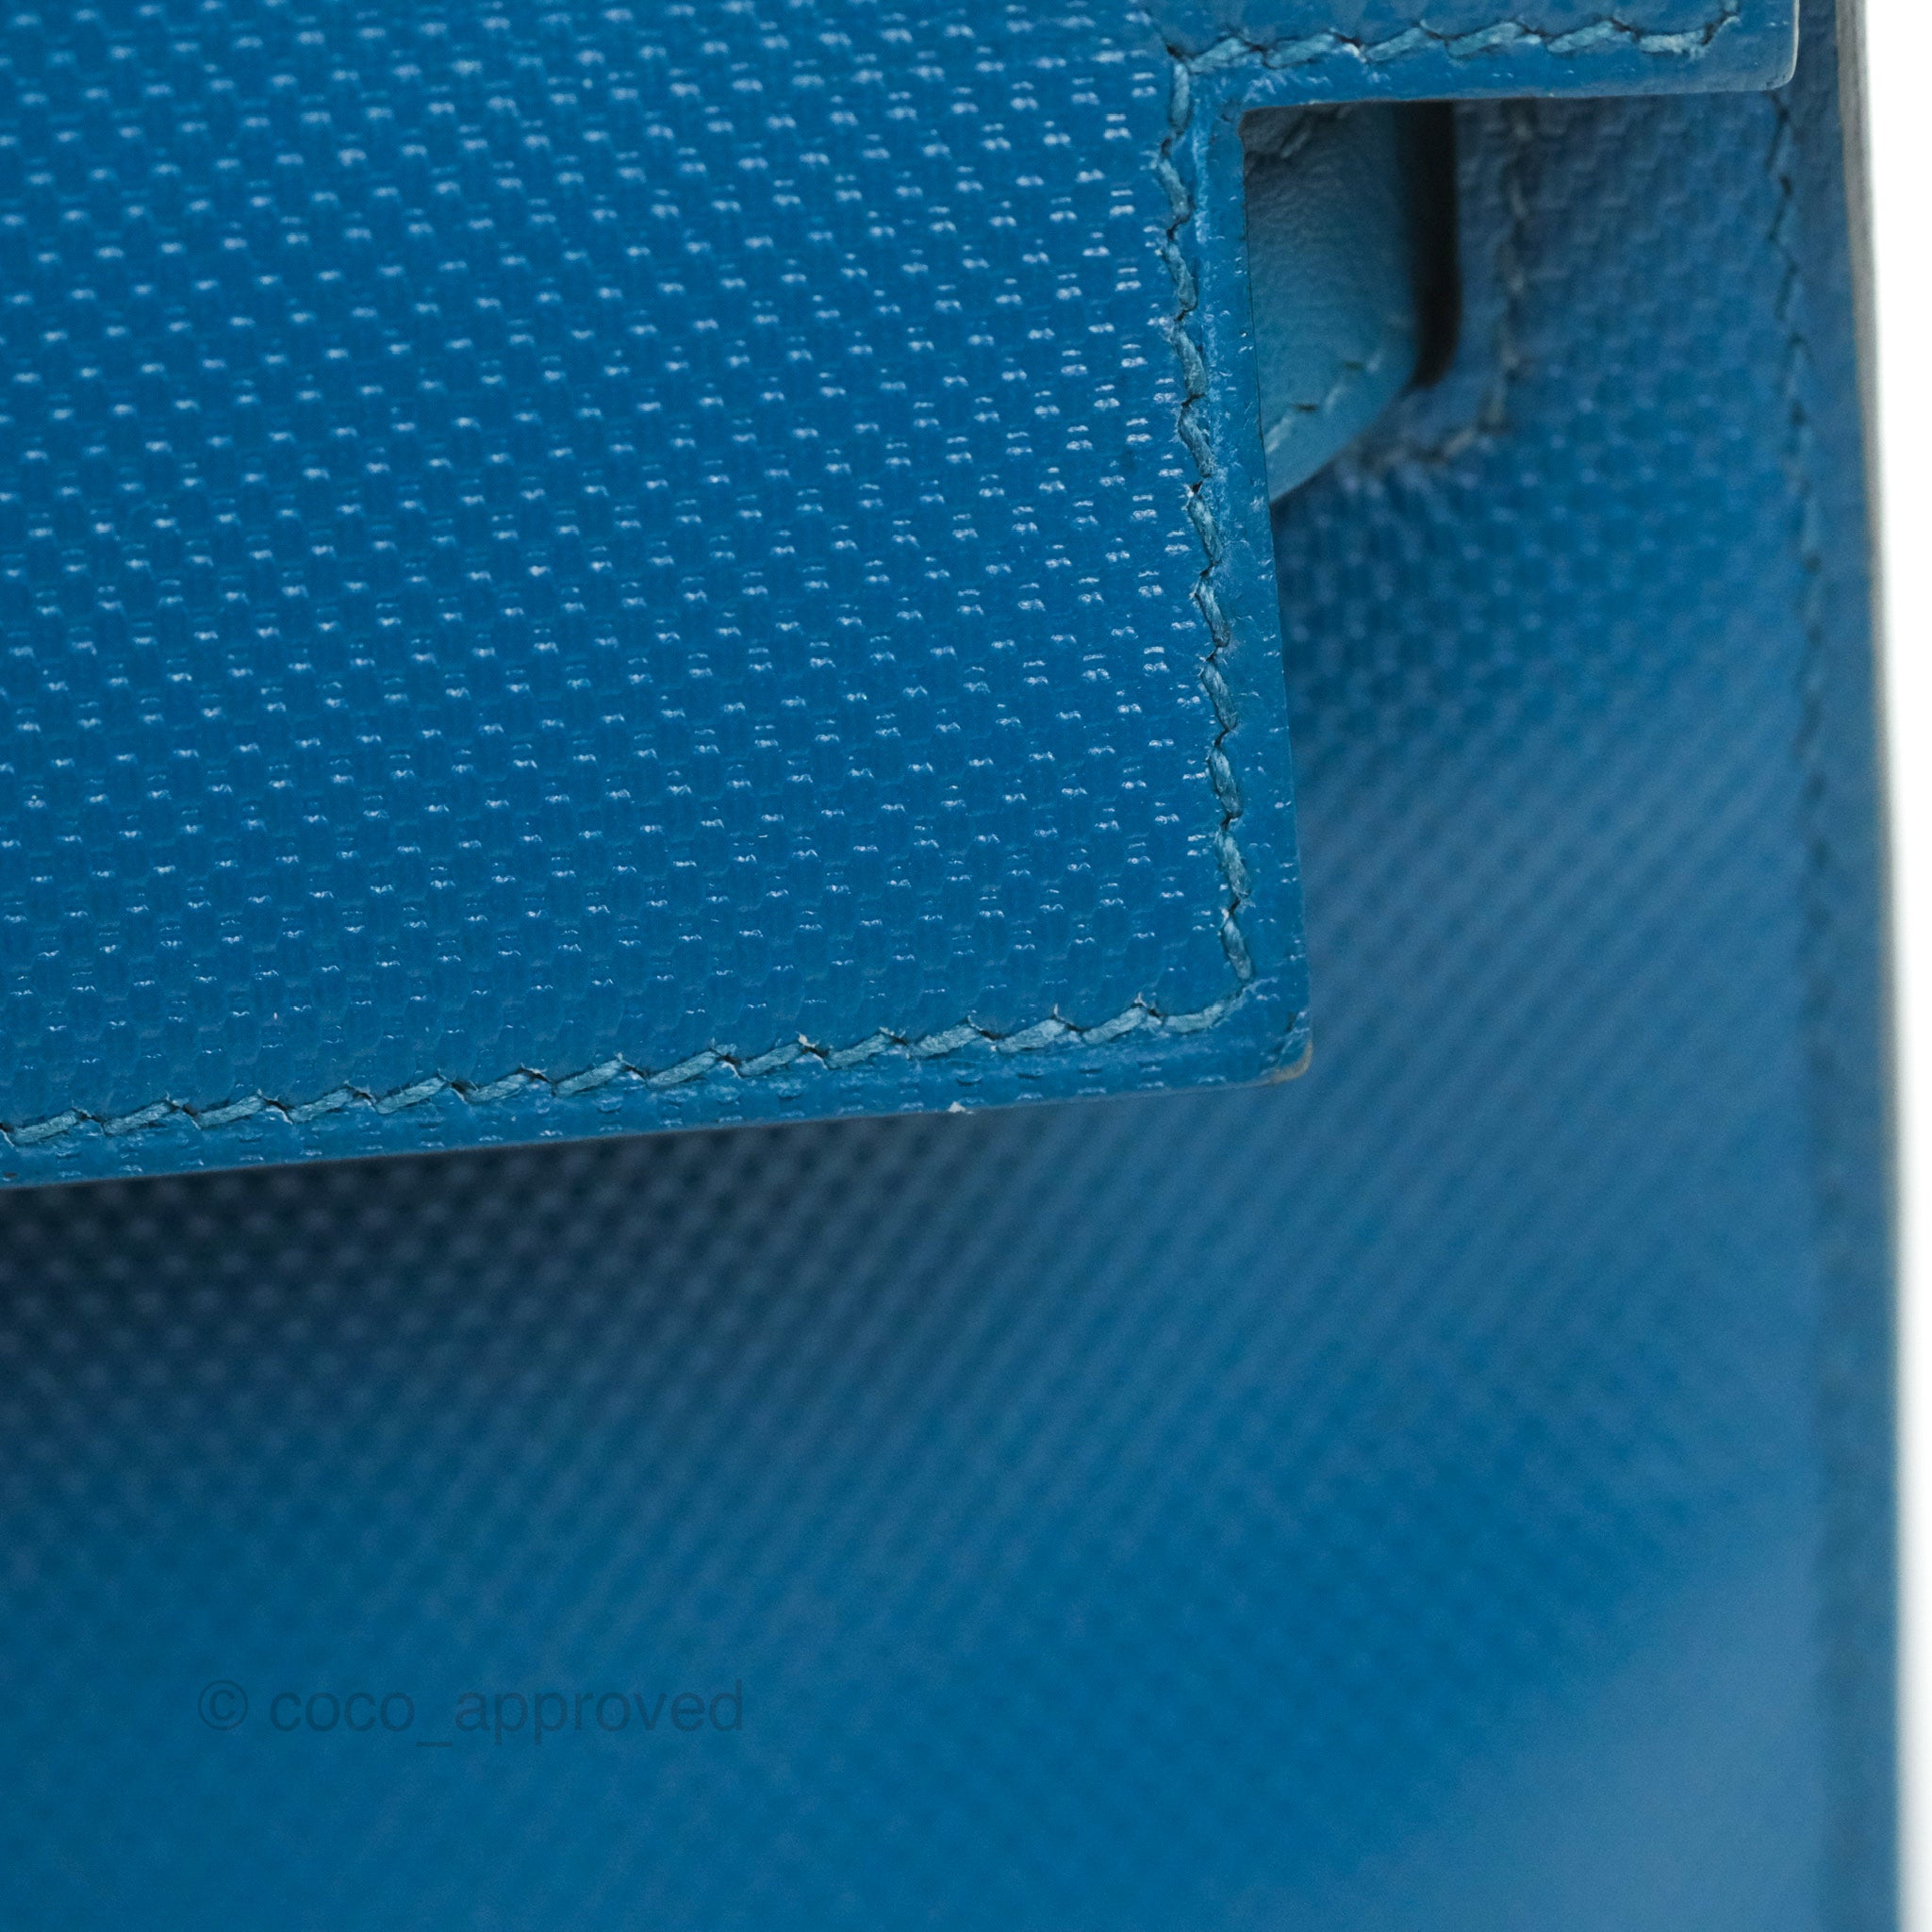 Kelly Pochette Swift Blue Zanzibar Palladium Hardware D Stamp